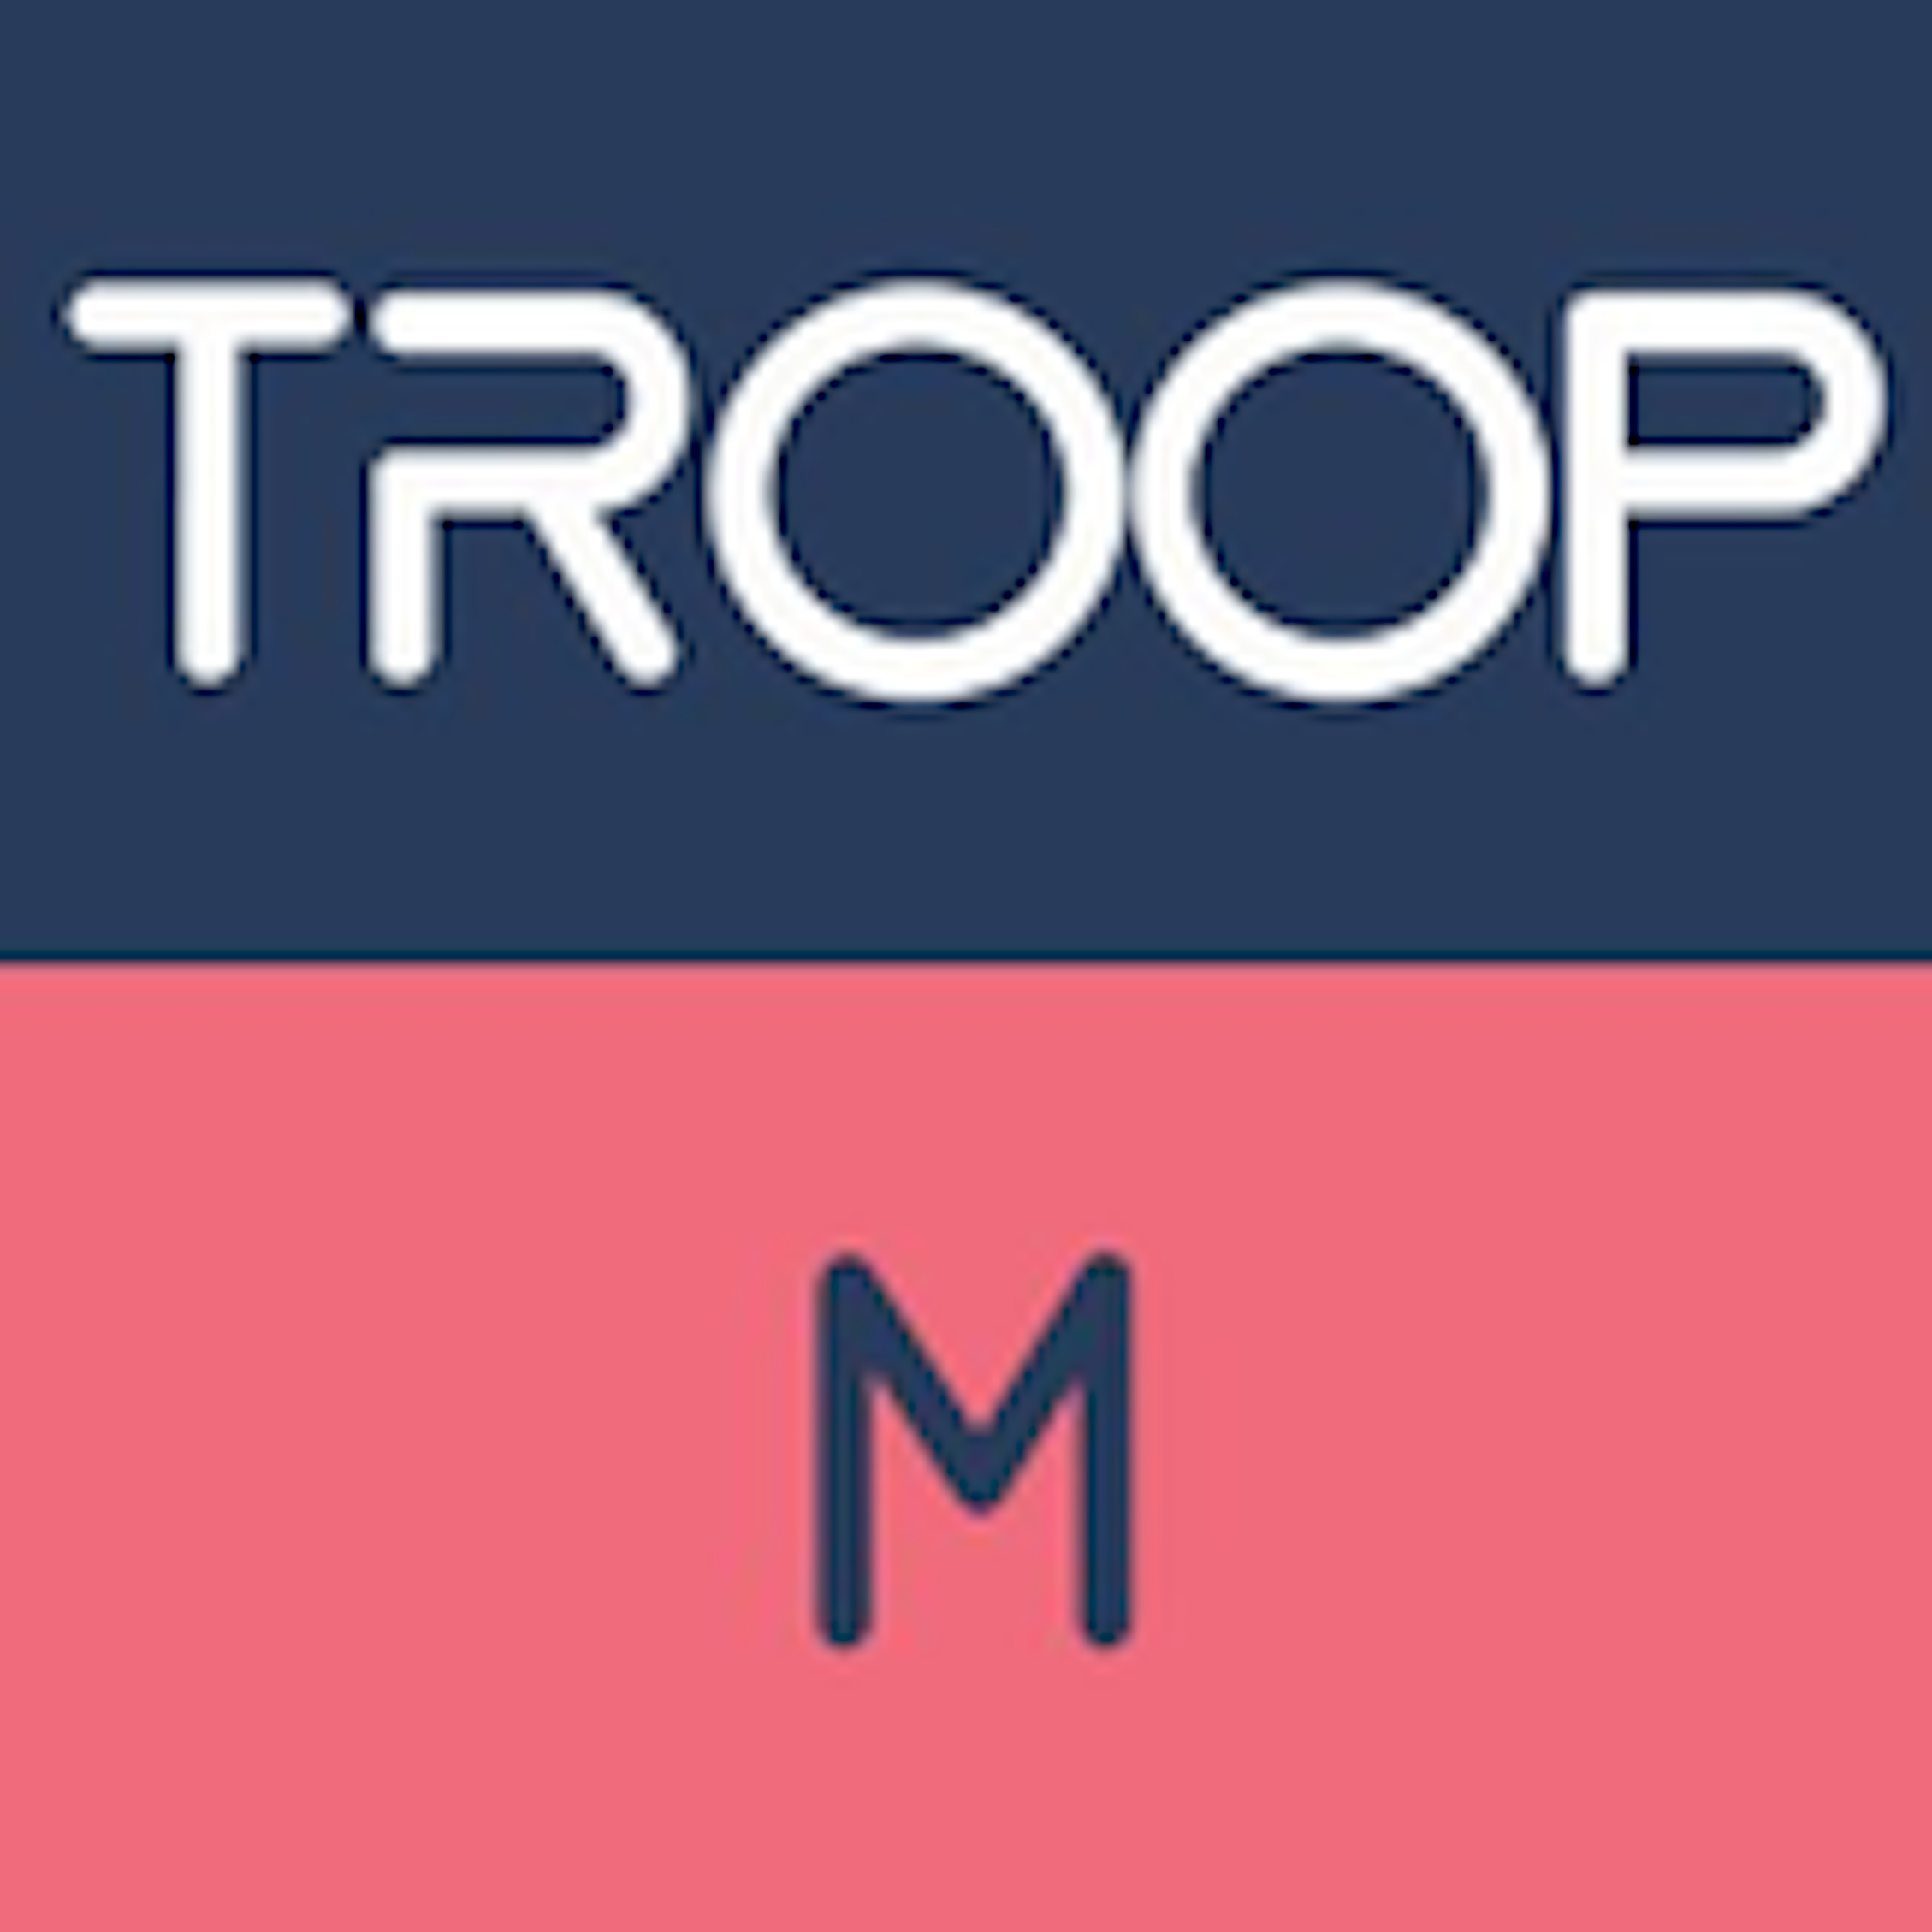 troop messenger download